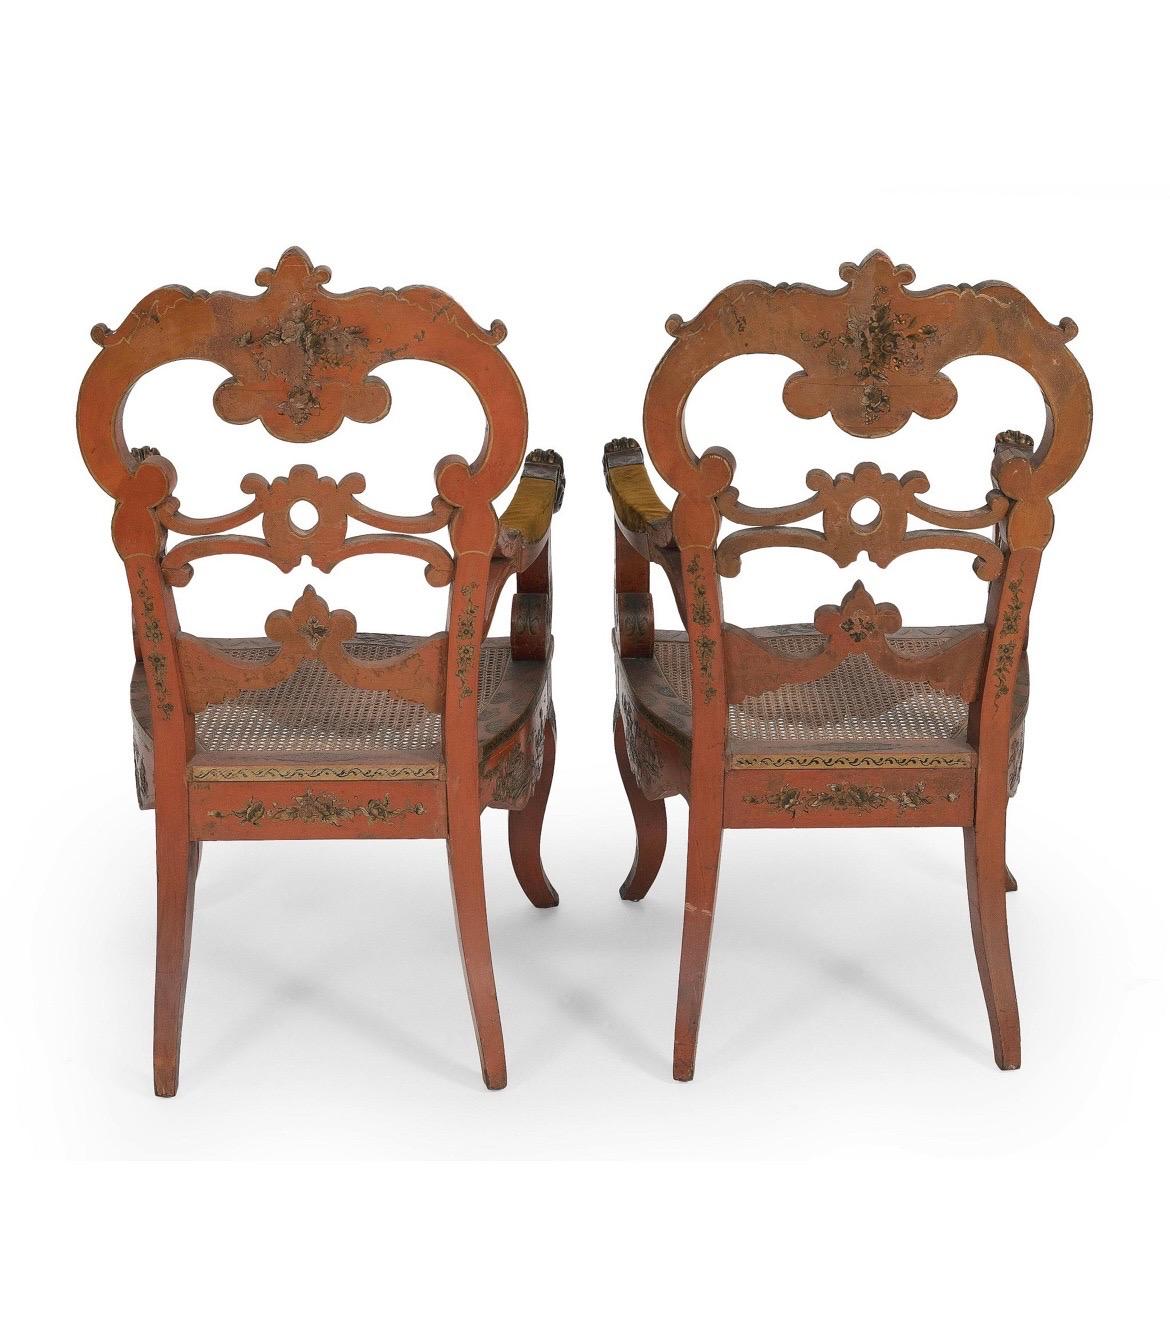 Venezianisch, Anfang 20. Jahrhundert. 

Ein außergewöhnliches Paar antiker venezianischer Sessel mit rotem Lackgrund und stark bemaltem, vergoldetem Chinoiserie-Dekor auf den Oberflächen. Jeder Stuhl zeigt figürliche Krieger, Pagodenstädte und